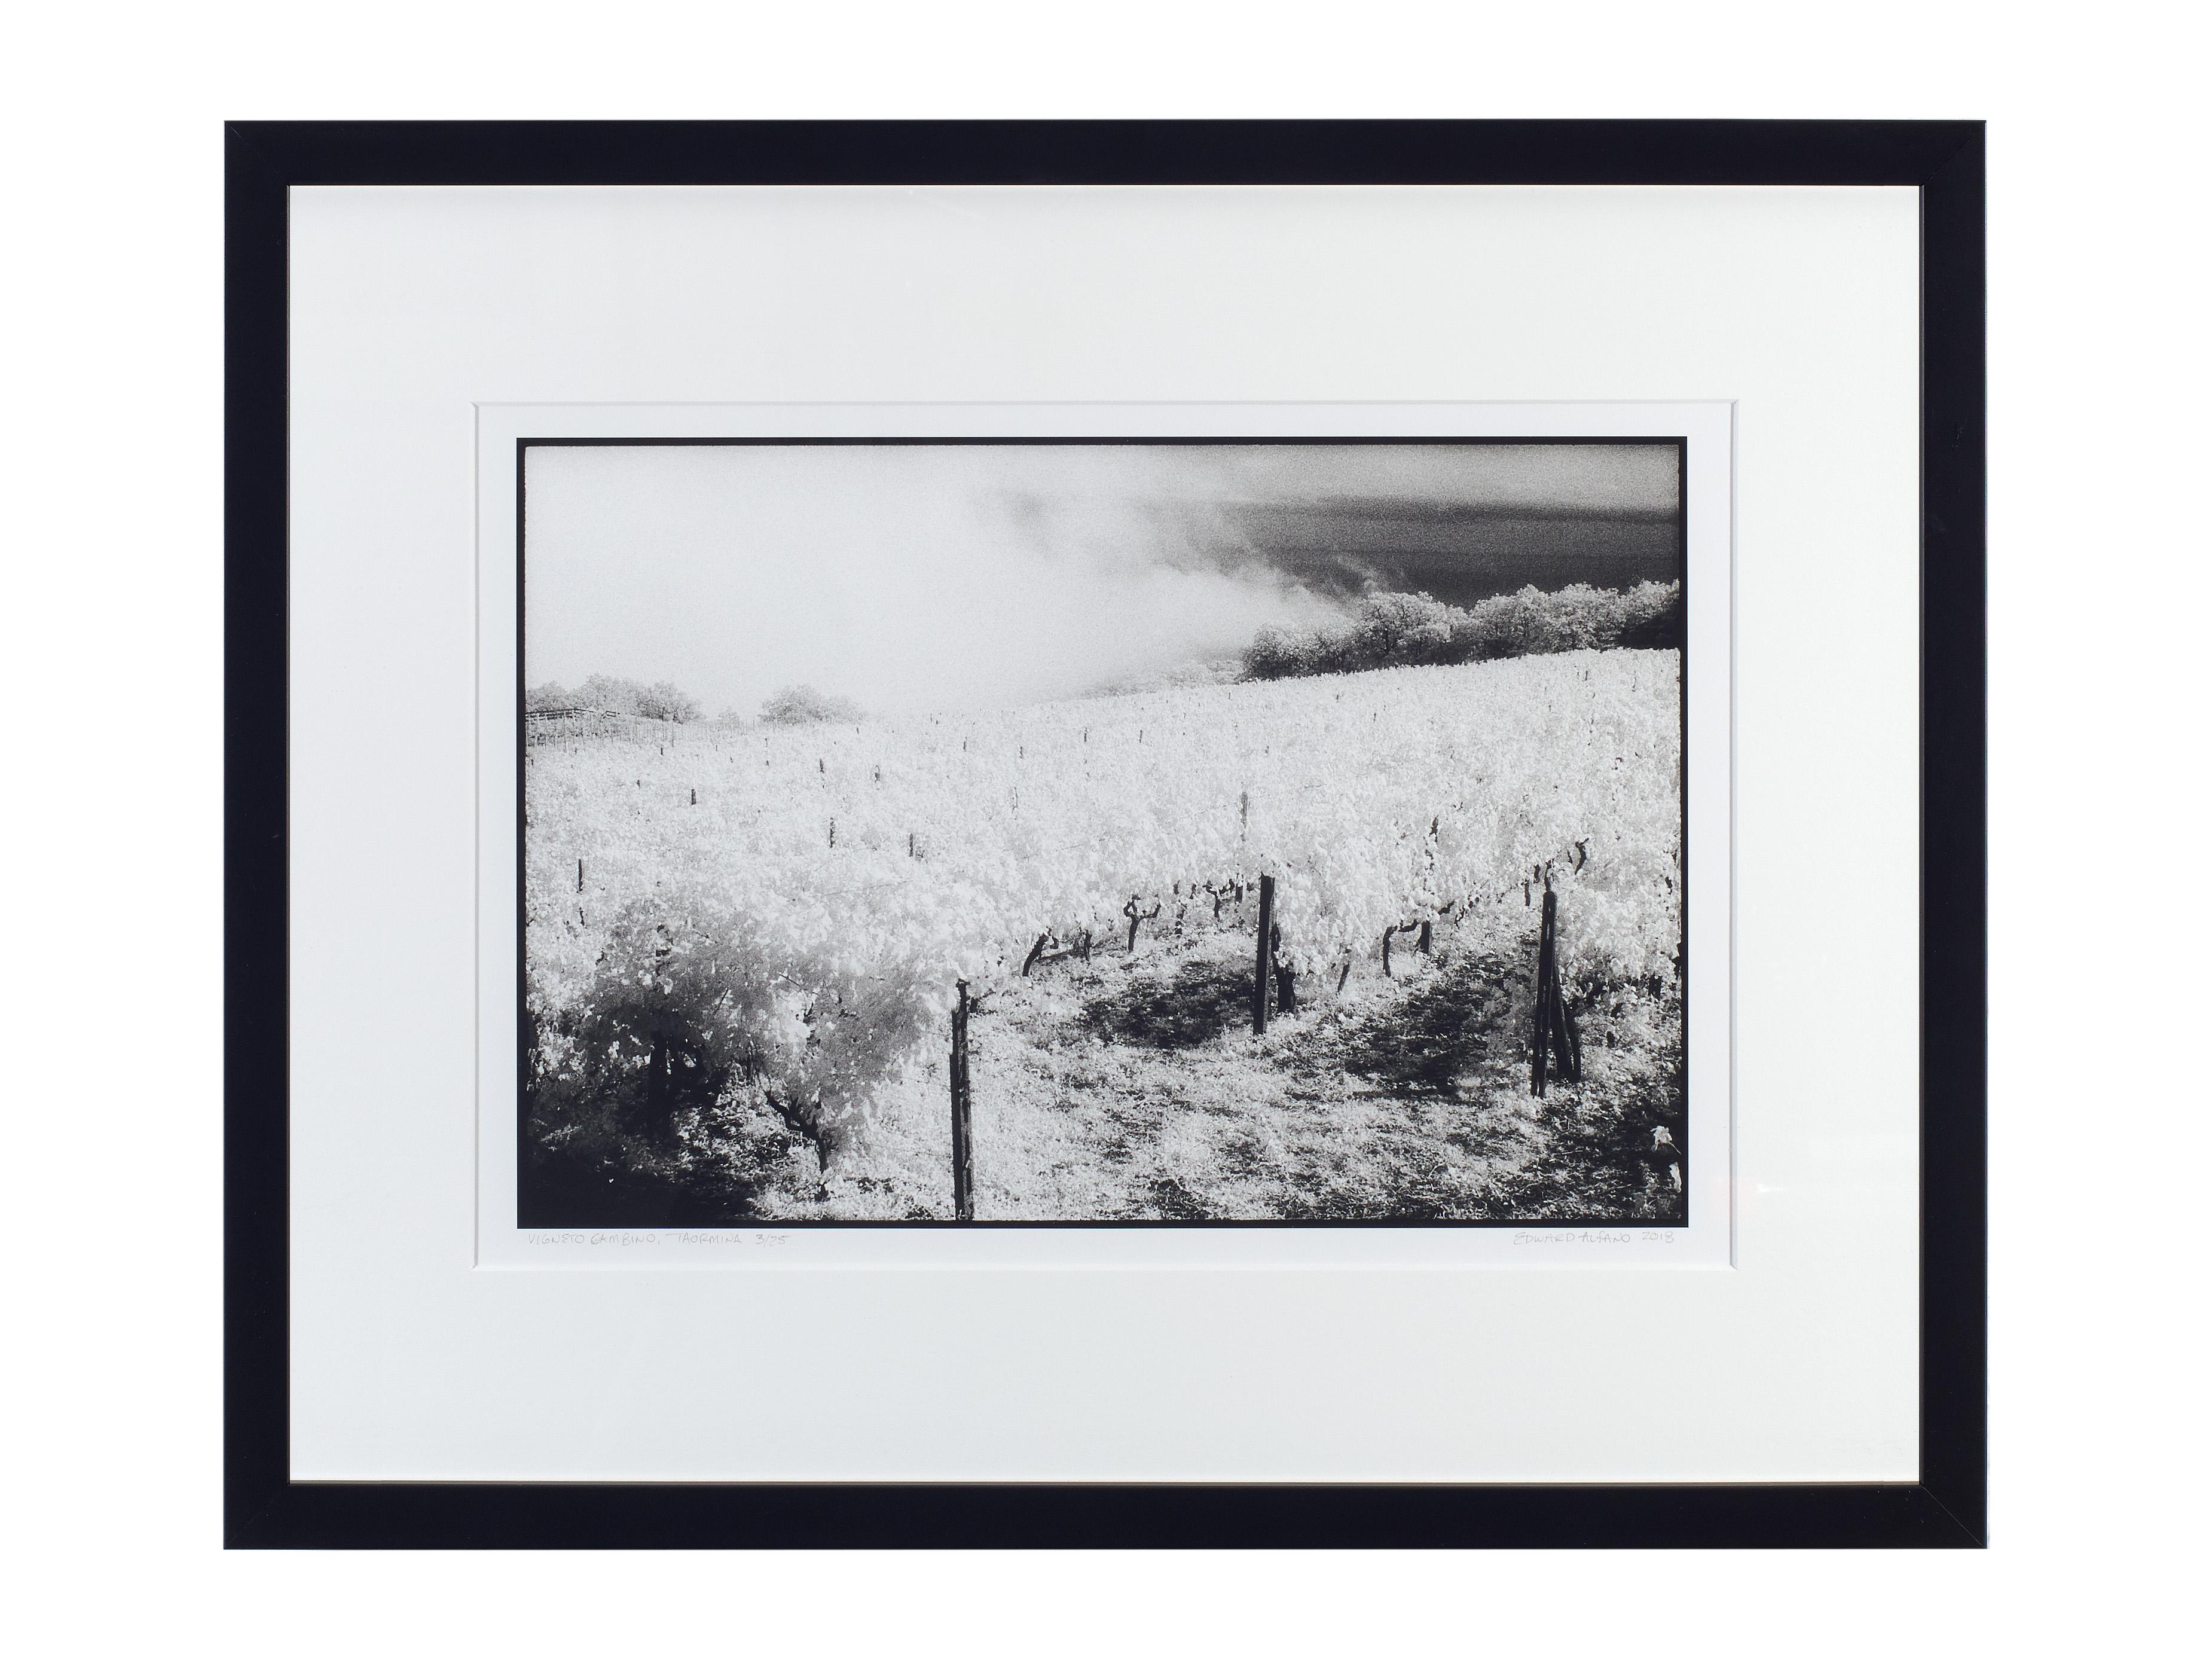 Vigneto Gambino, Taormina, Sicile - Paysage noir et blanc d'un vignoble italien - Contemporain Photograph par Edward Alfano